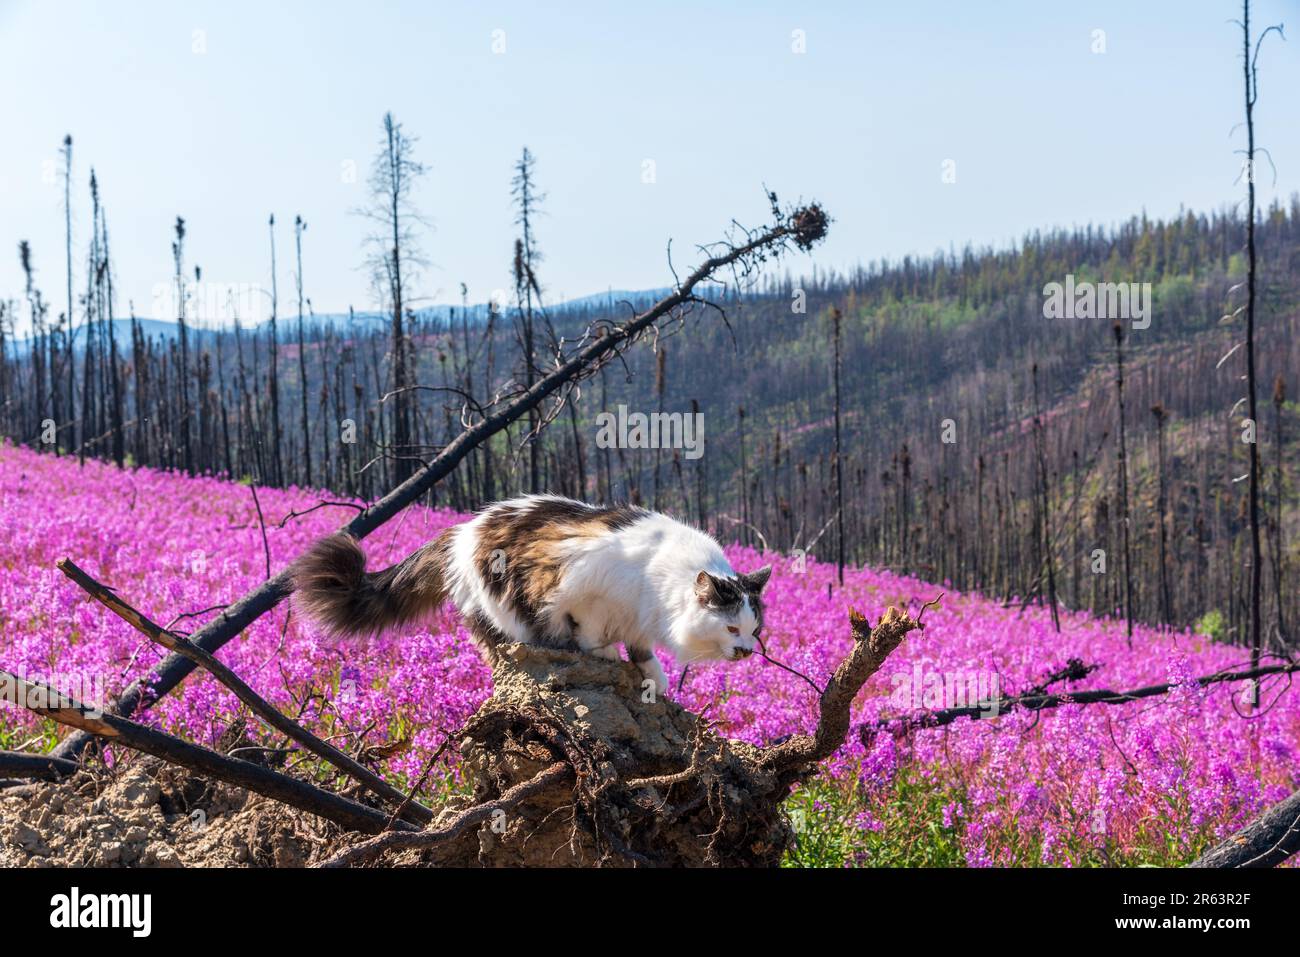 PET gatto a piedi su albero bruciato rosa fiori di Fireweed durante l'estate nel nord del Canada con splendido scenario rosa, viola che circonda il felino Foto Stock